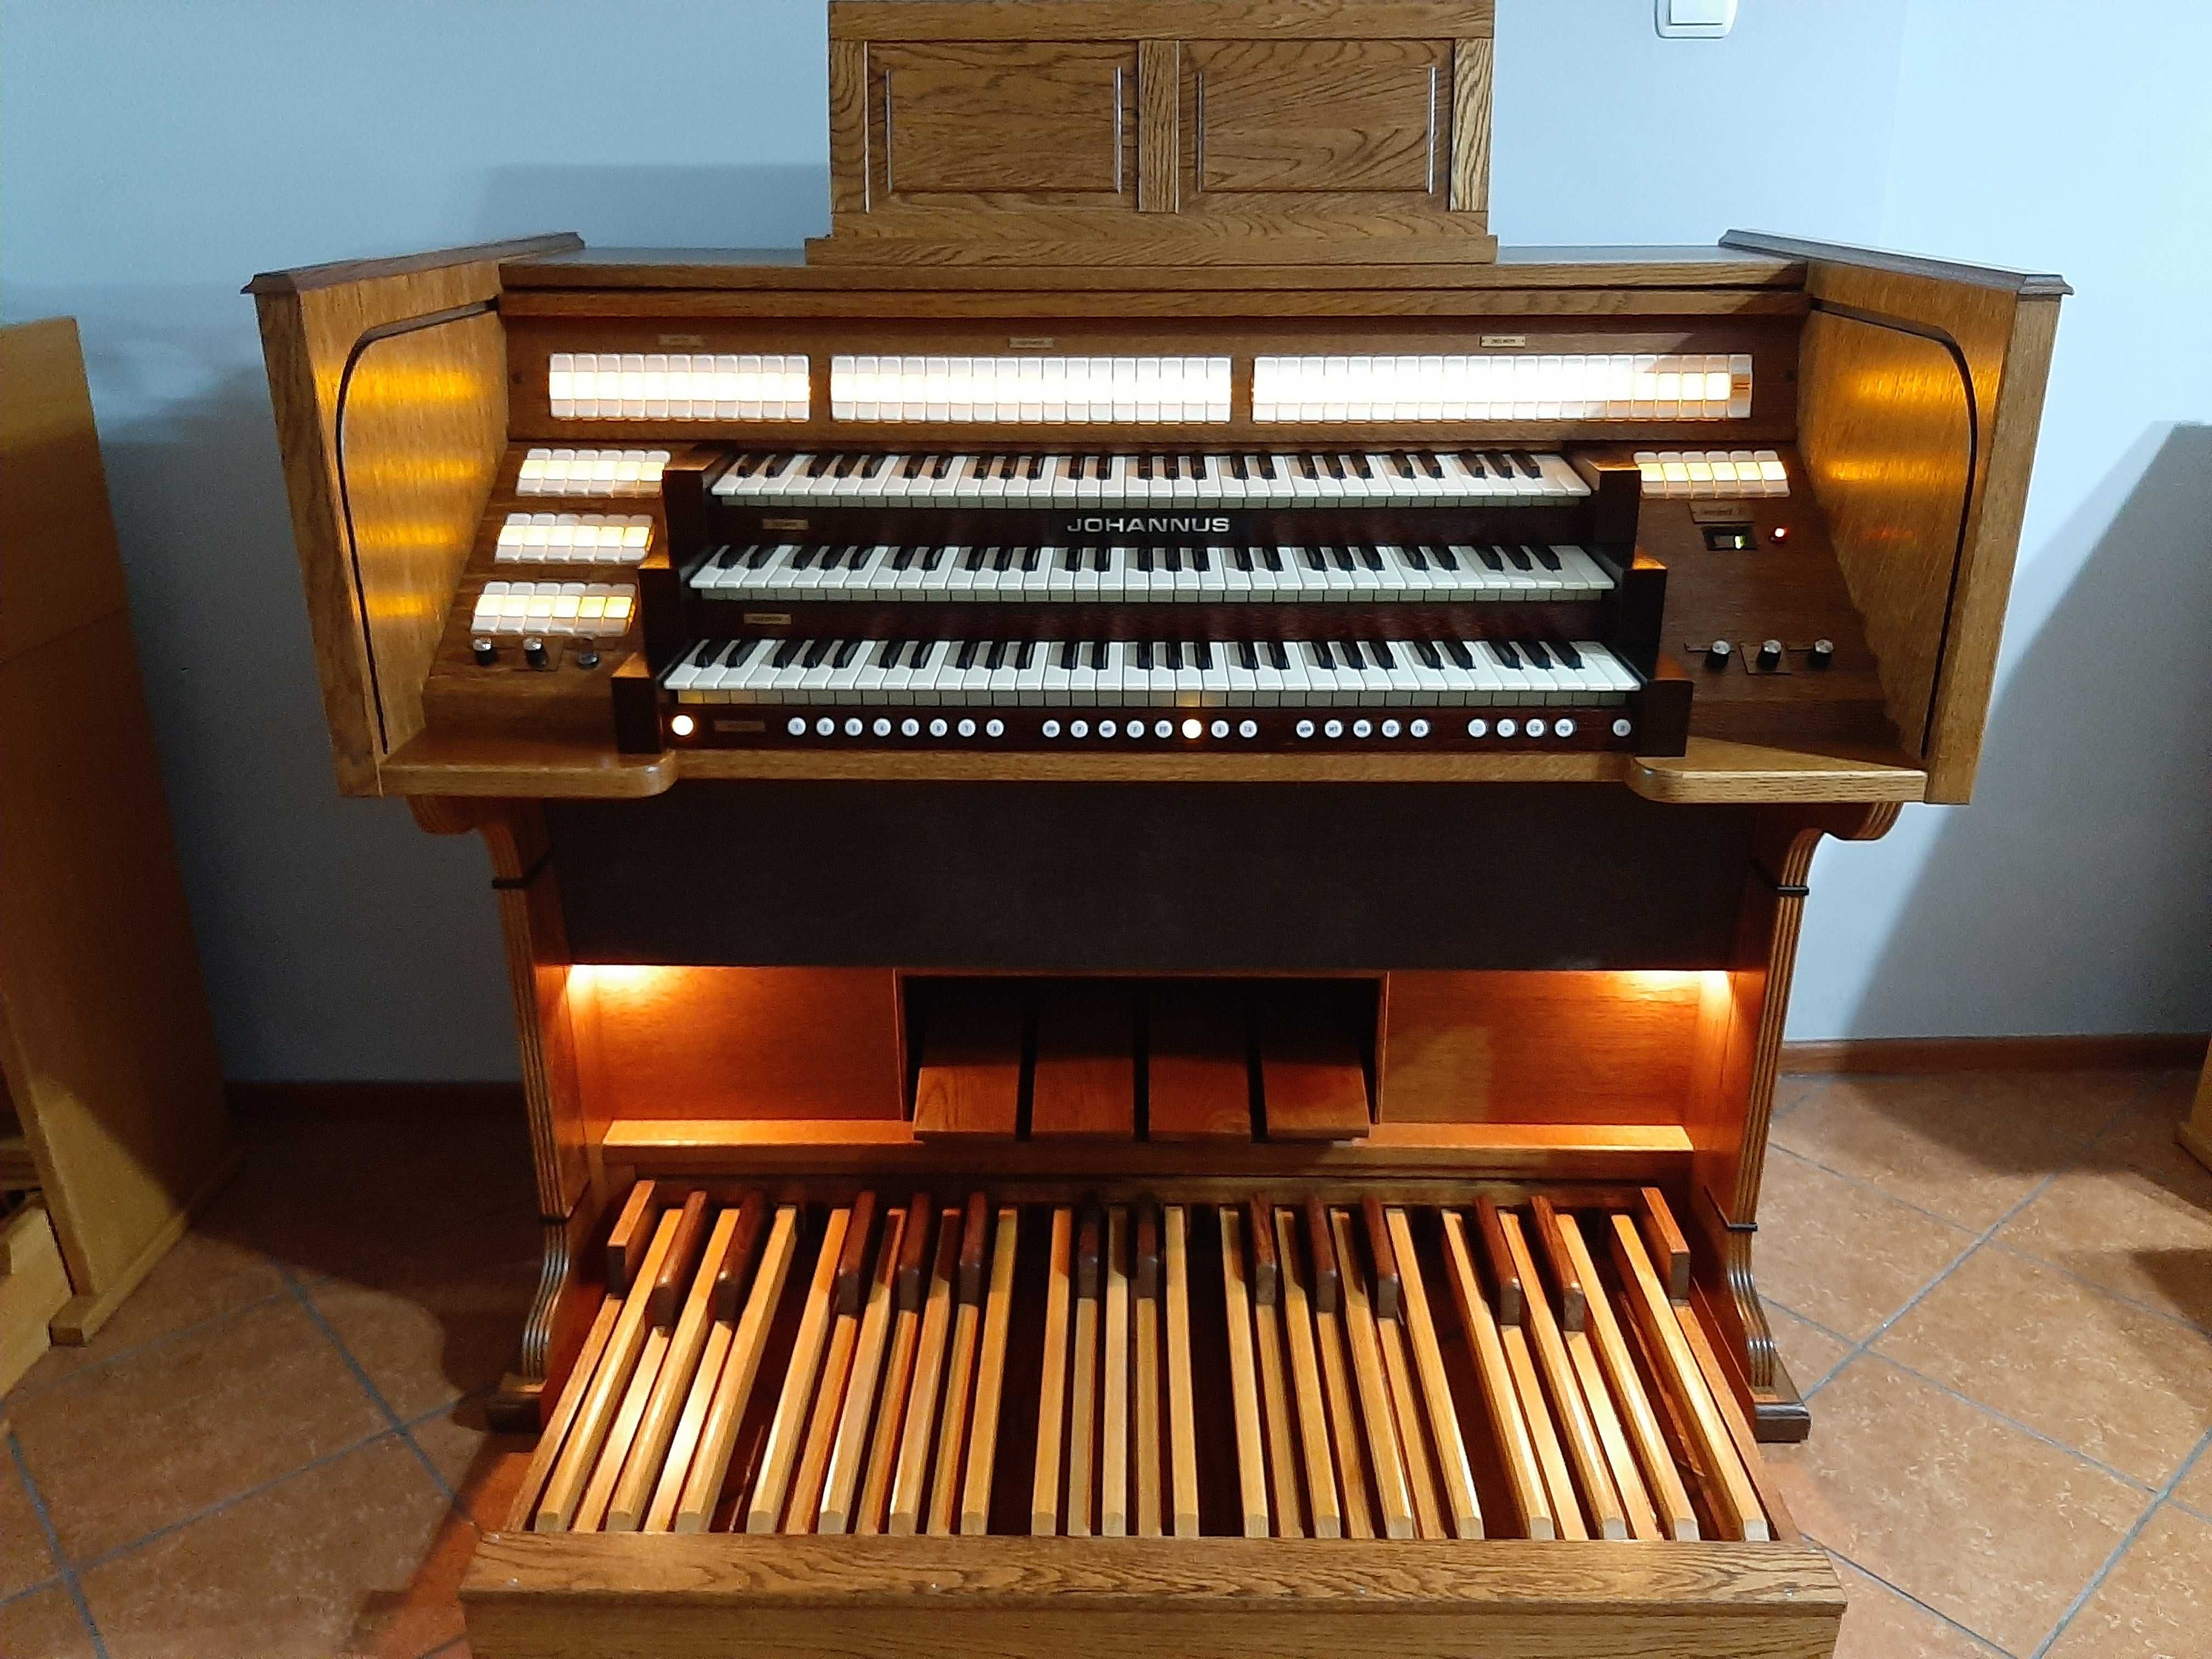 Cyfrowe organy kościelne Johannus Sweelinck 30 deluxe 3 manuały